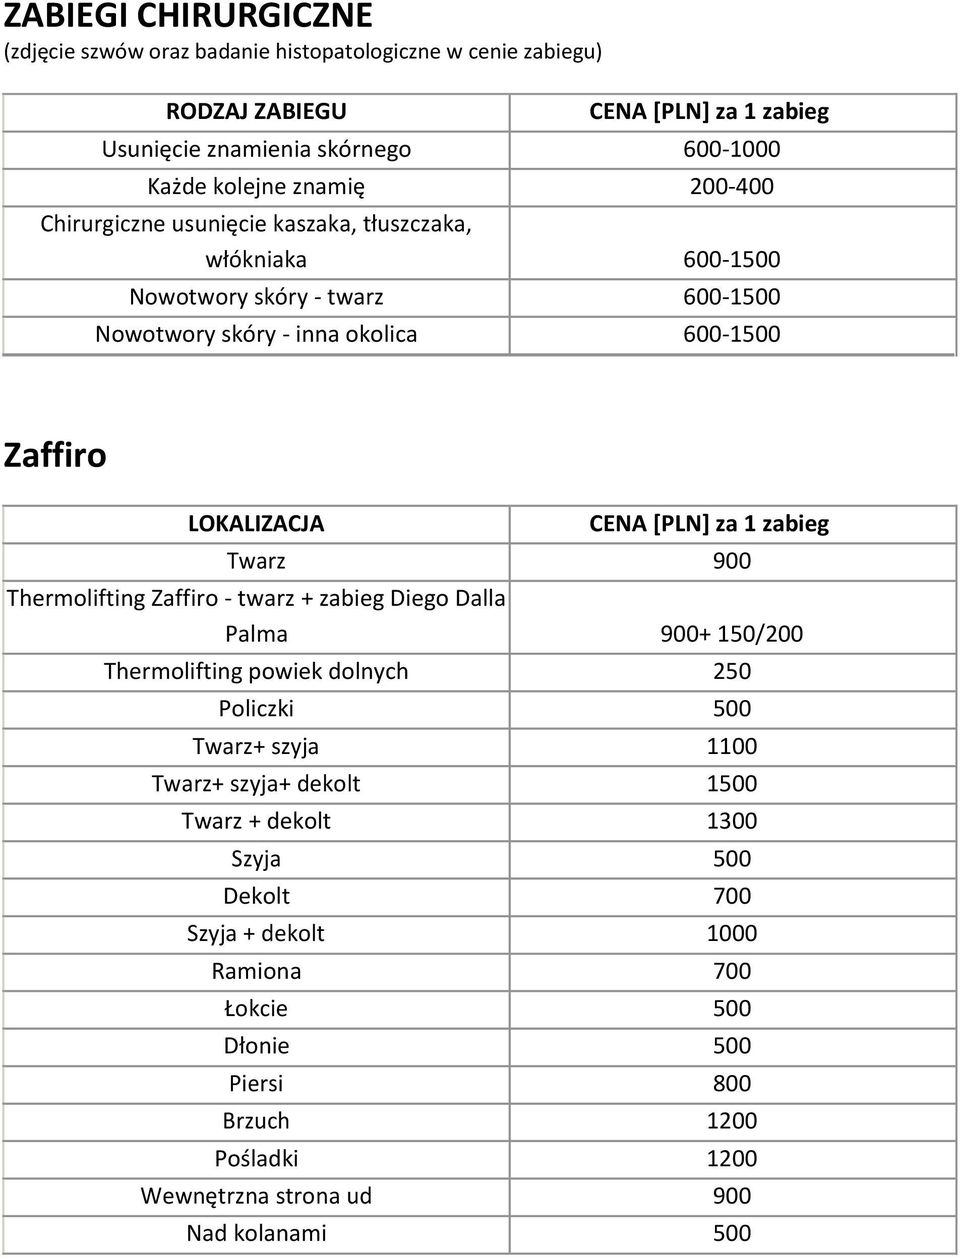 Thermolifting Zaffiro - twarz + zabieg Diego Dalla Palma 900+ 150/200 Thermolifting powiek dolnych 250 Policzki 500 Twarz+ szyja 1100 Twarz+ szyja+ dekolt 1500